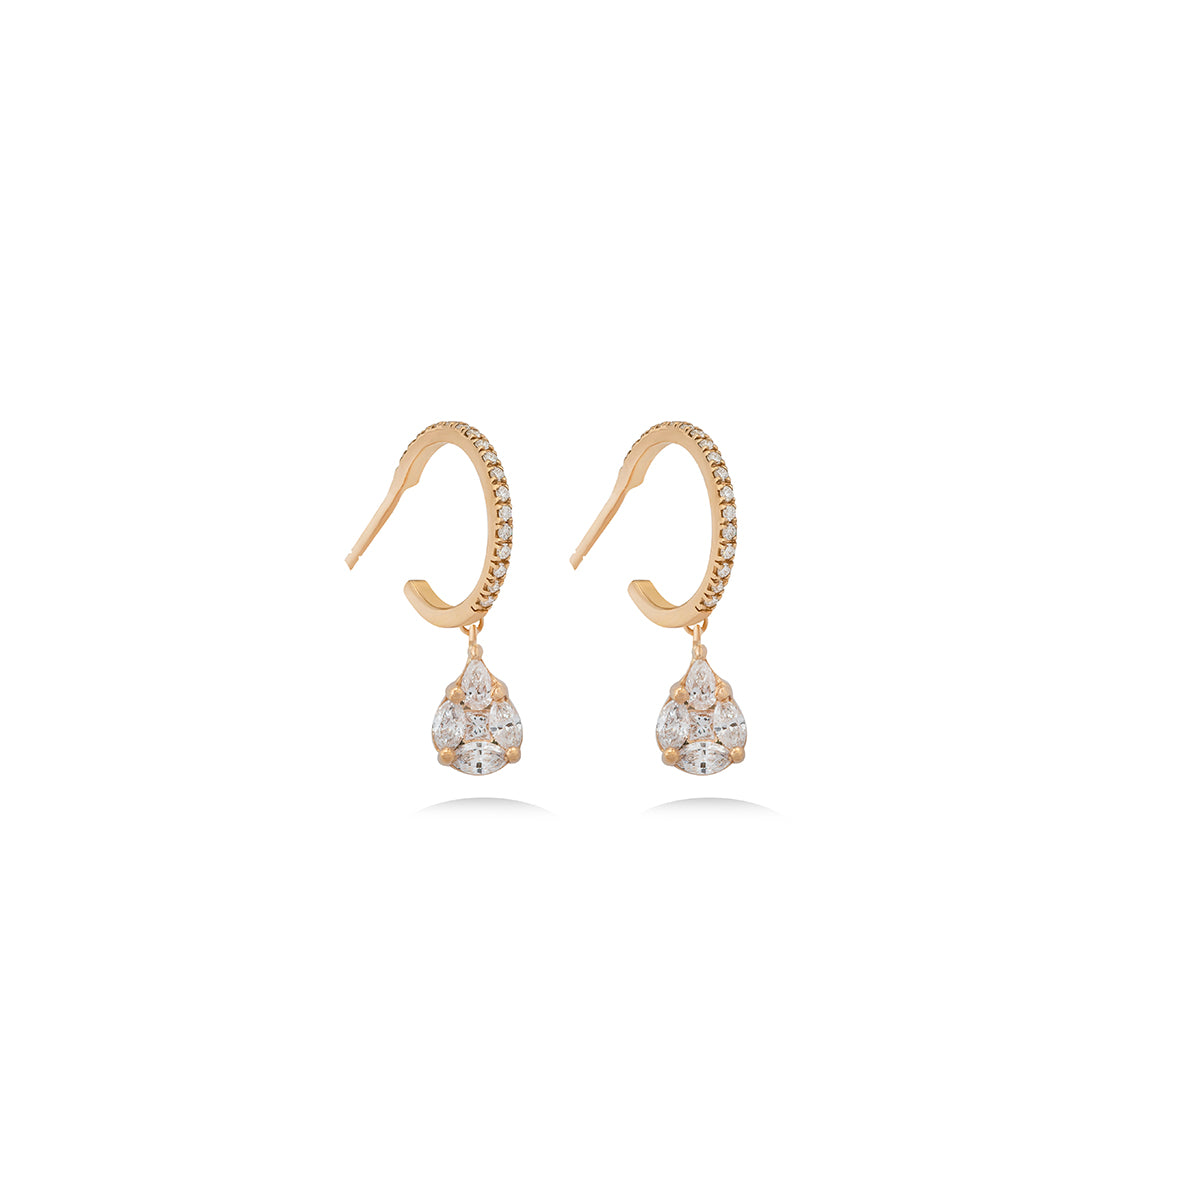 Oval Diamond Hoops Earrings in 18k Gold